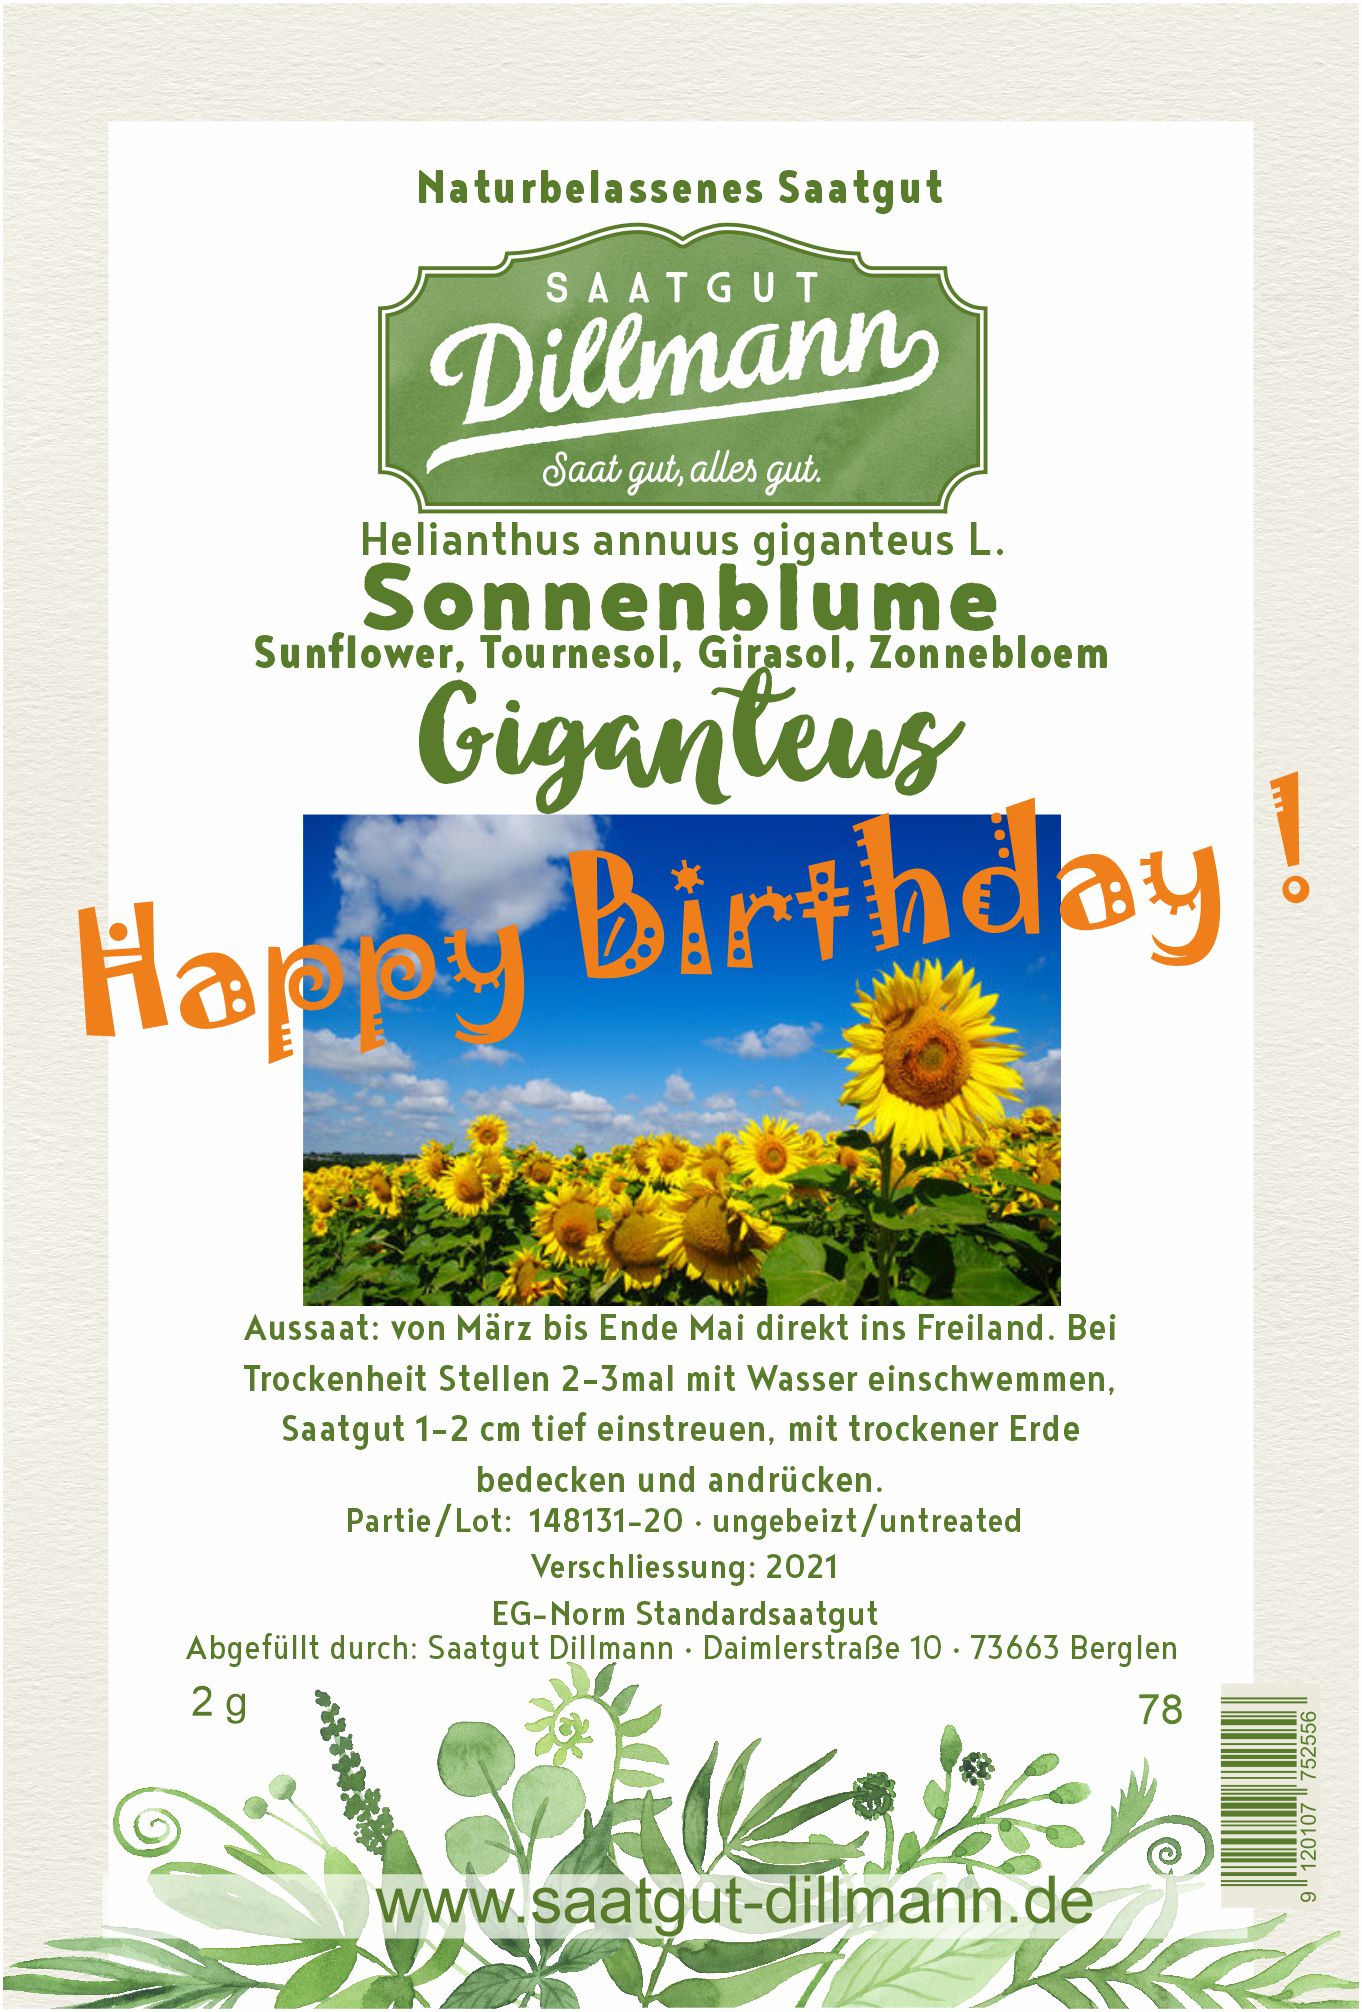 Happy Birthday! Sonnenblumensamen Giganteus